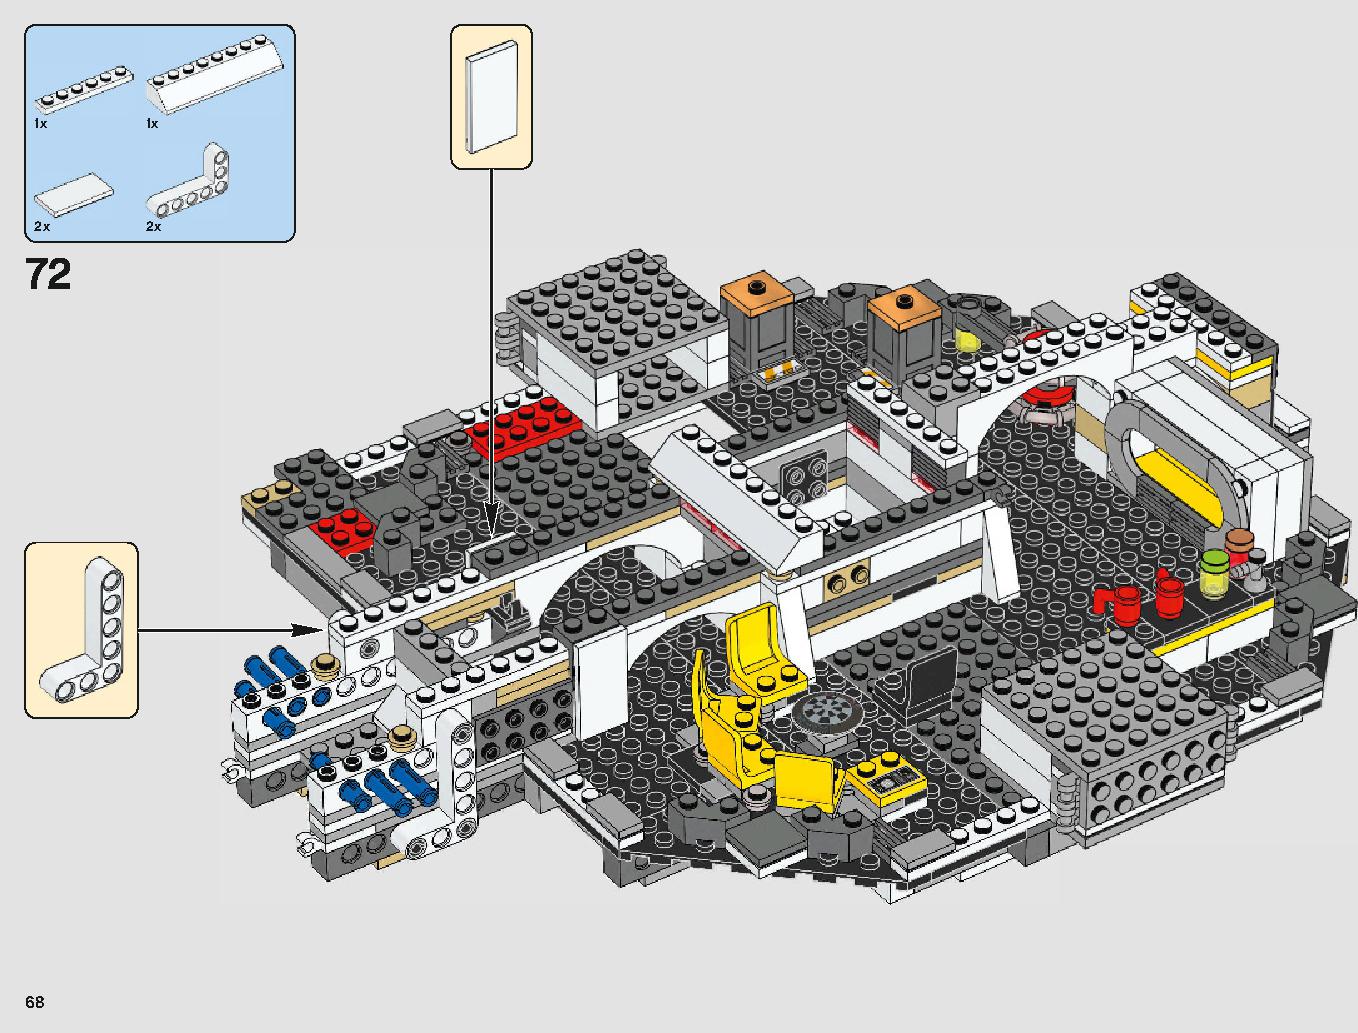 ミレニアム・ファルコン 75212 レゴの商品情報 レゴの説明書・組立方法 68 page